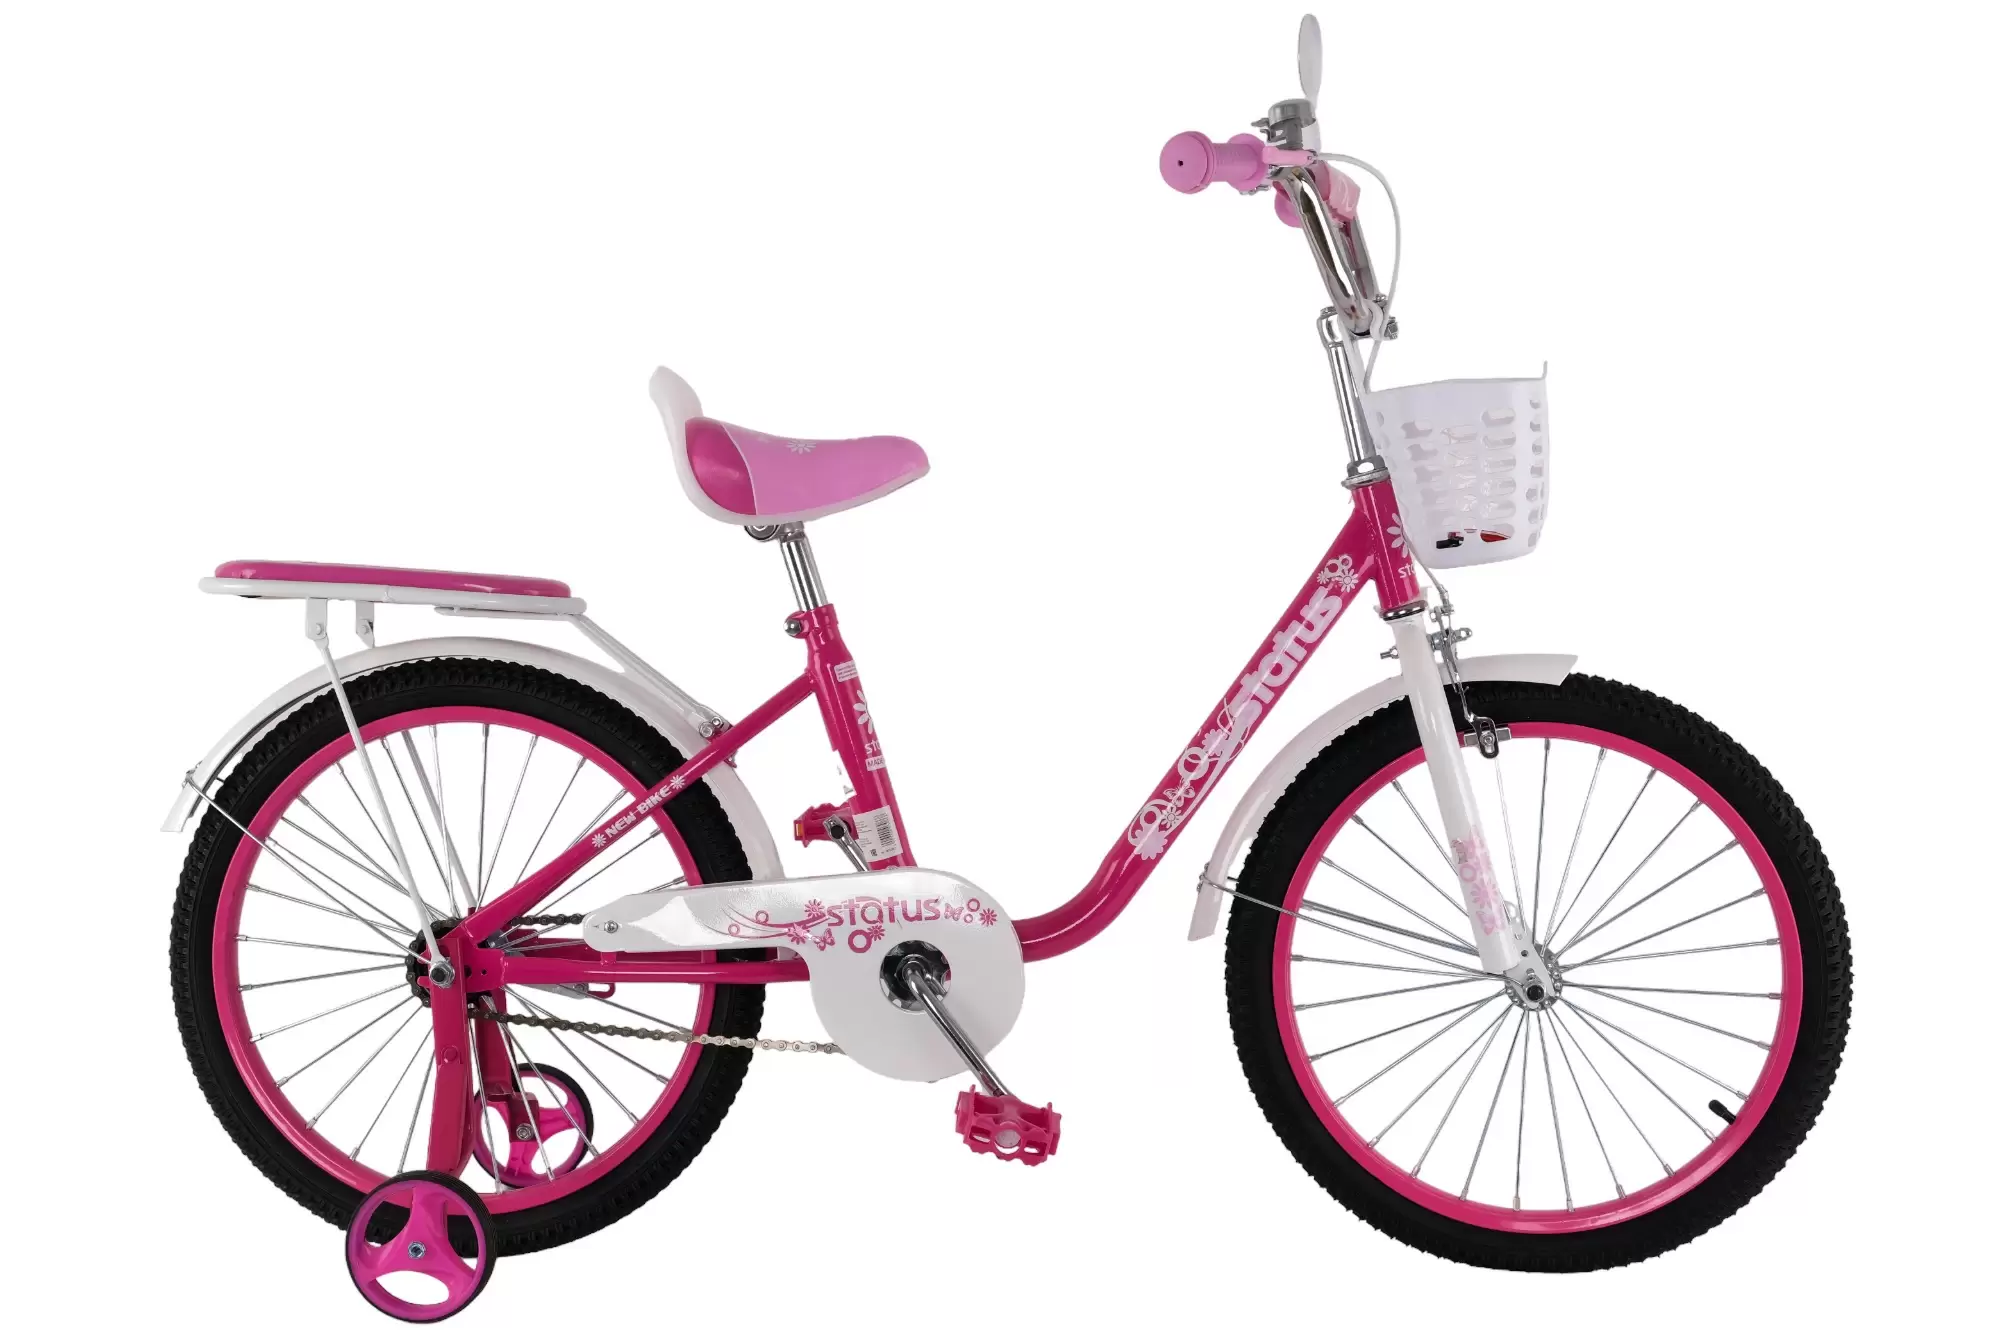 Велосипед Status 20 дюймов розовый (6 - 11 лет)